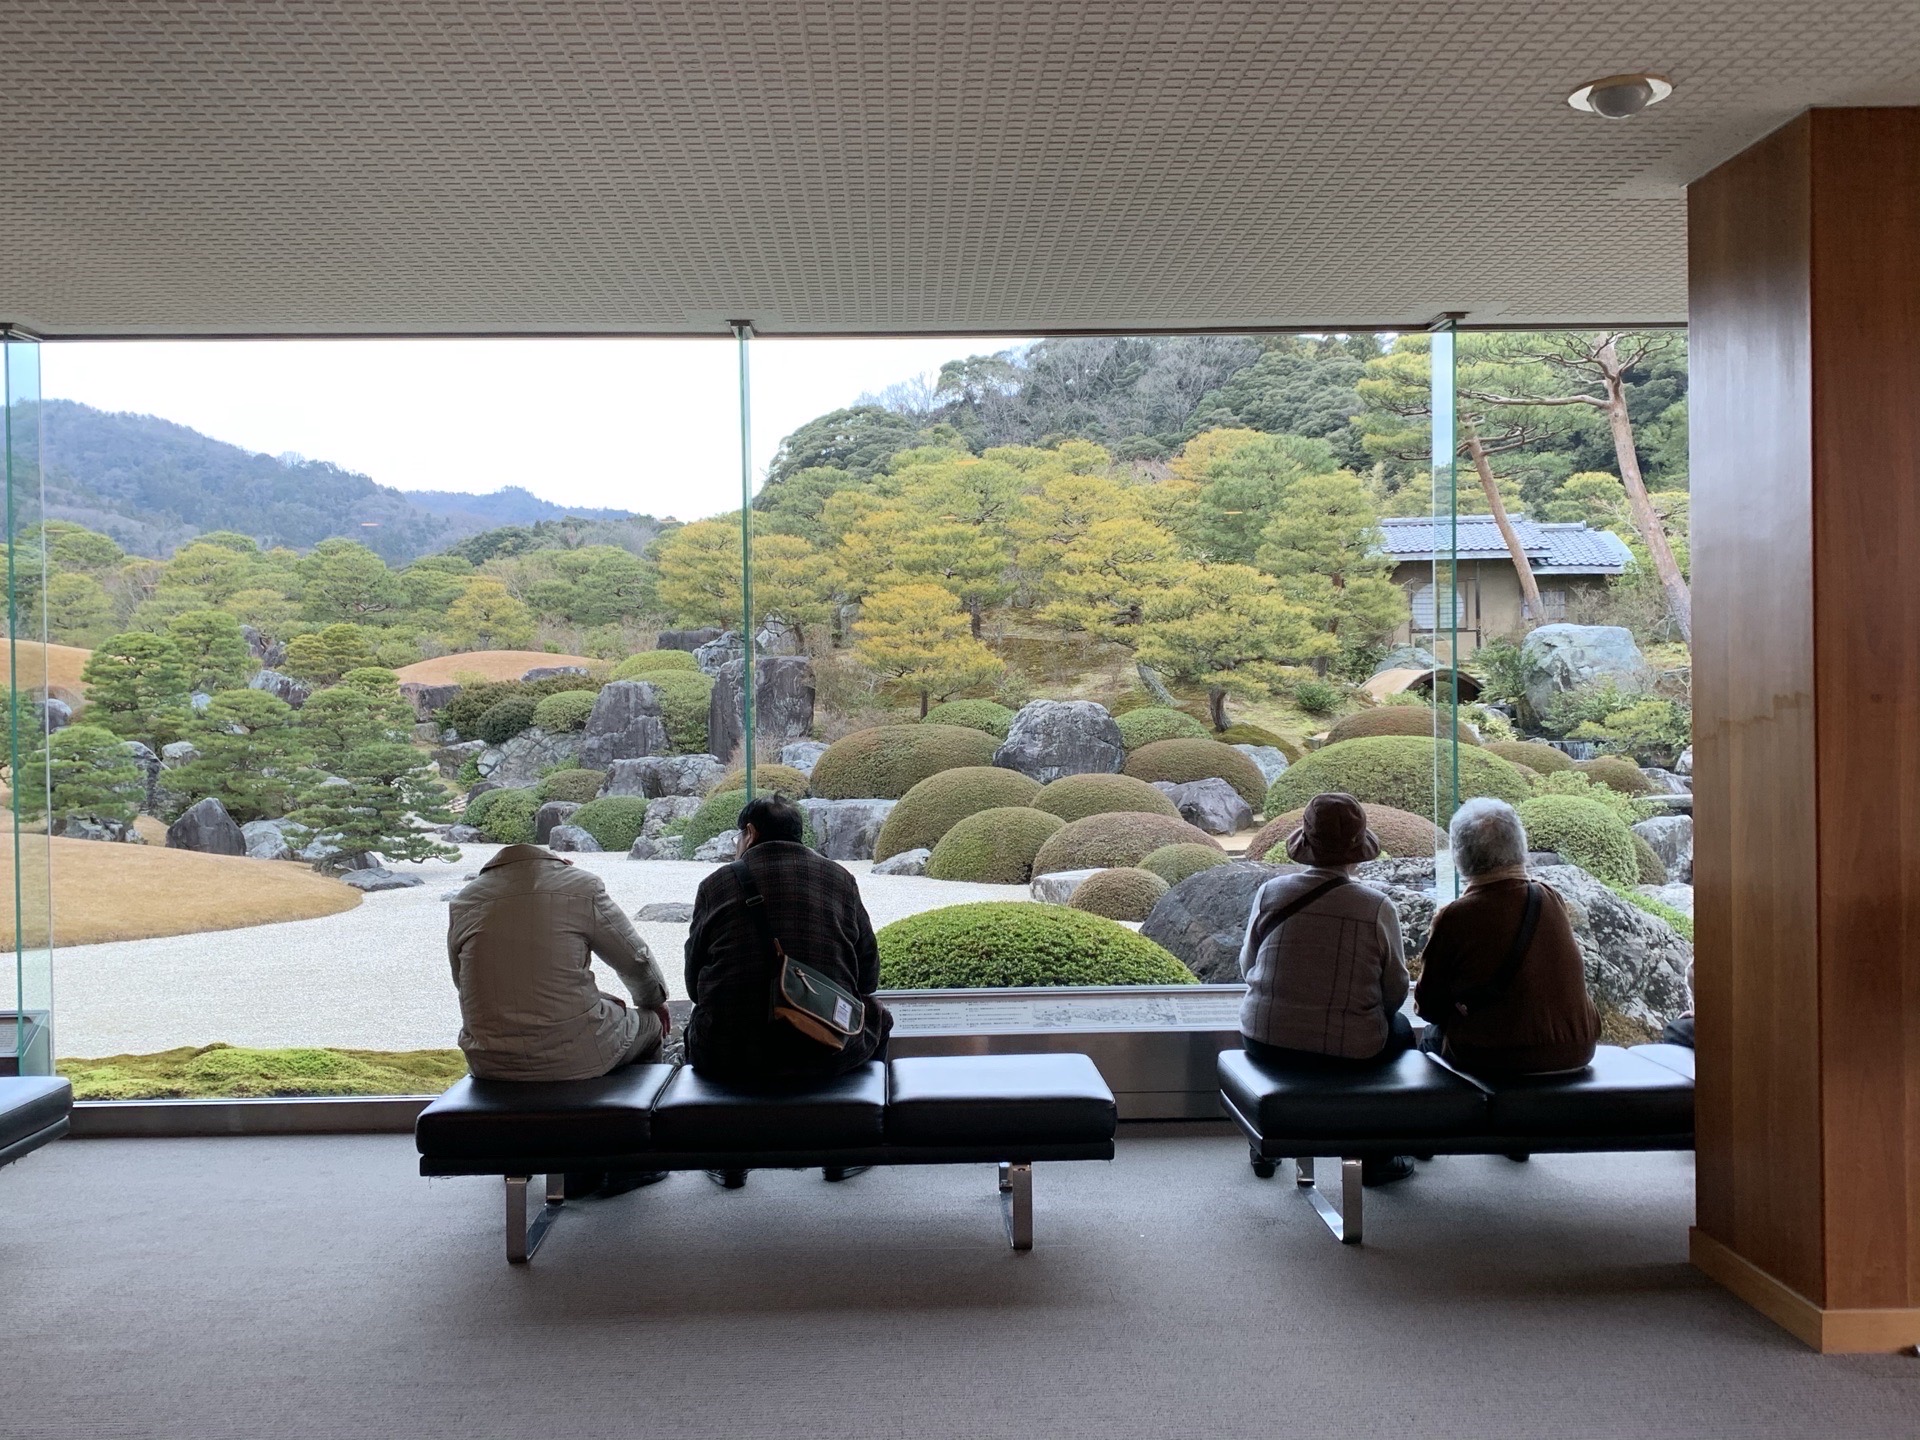 足立美术馆是很有名的，在房间内，隔着玻璃窗看日本园林，据说是创立人根据日本名画布园。这次去从松江坐j